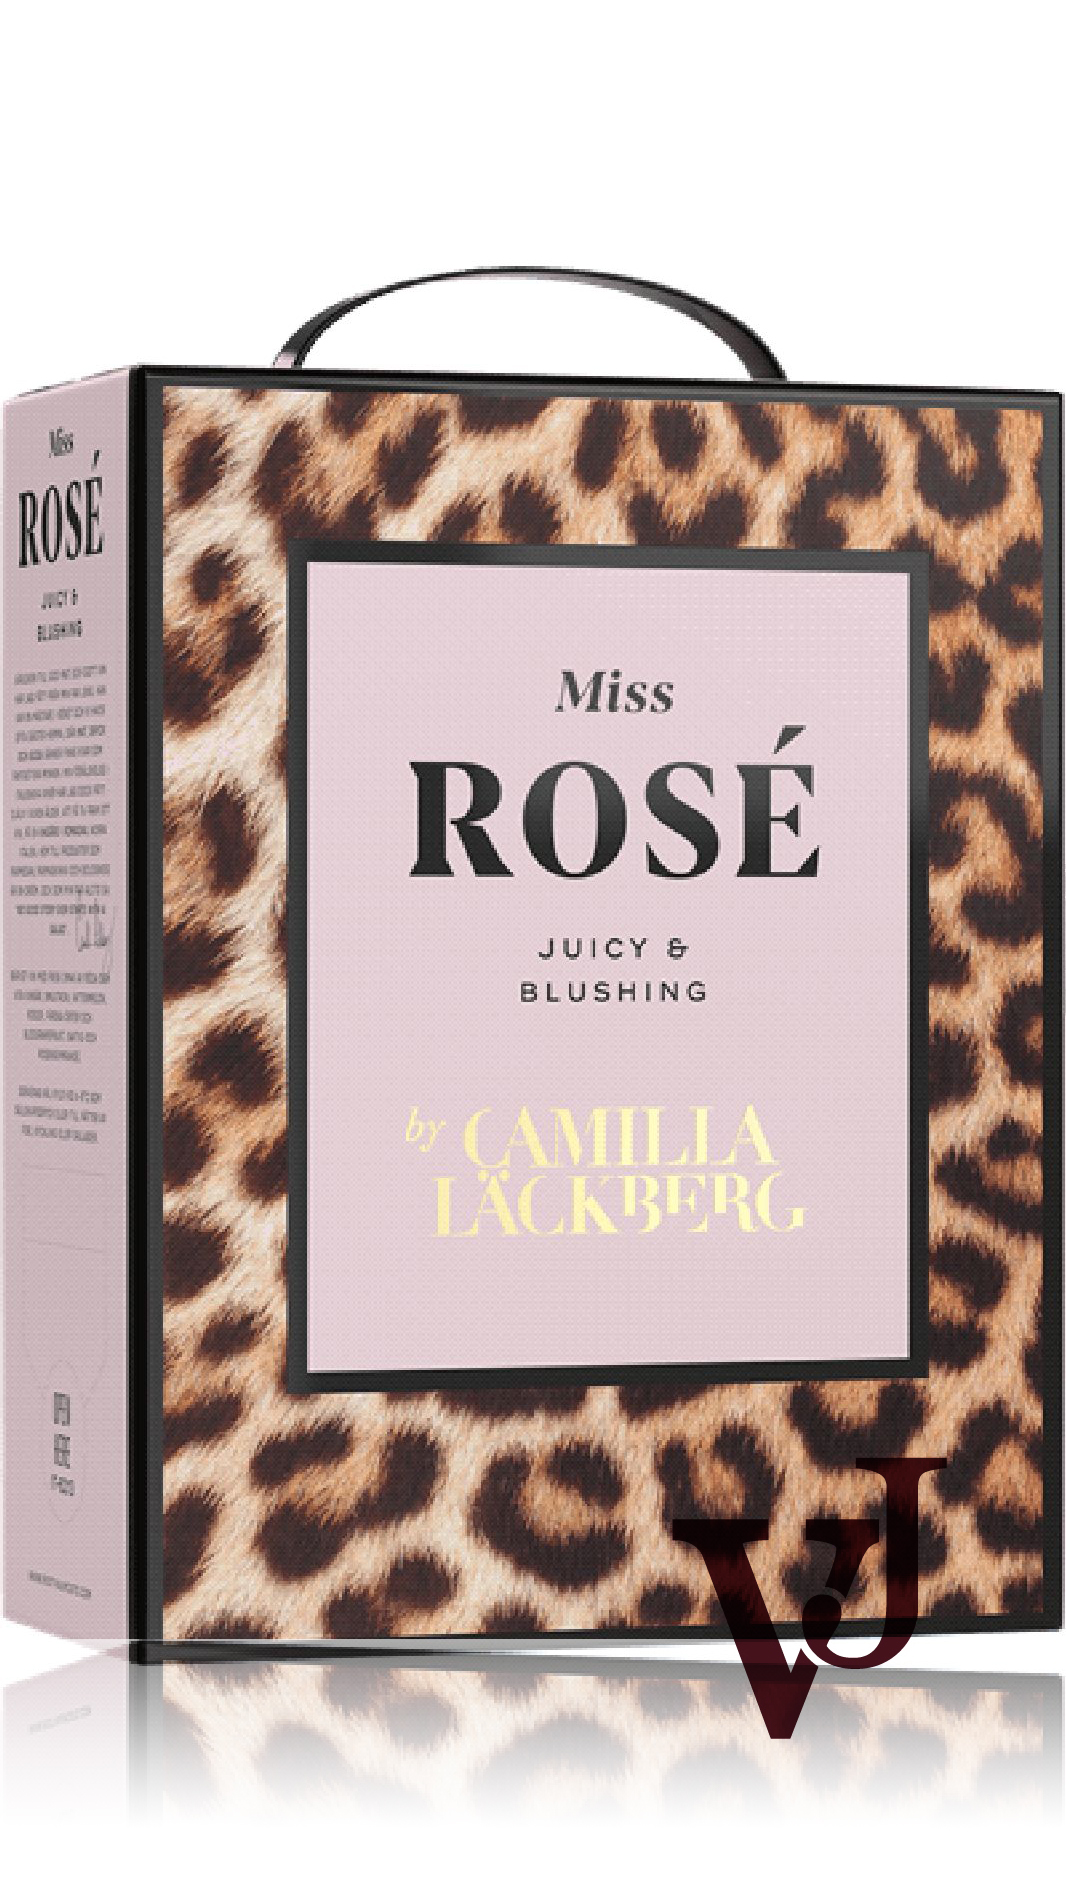 Rosé Vin - Miss Rosé by Camilla Läckberg artikel nummer 5158408 från producenten Poderi dal Nespoli från området Italien